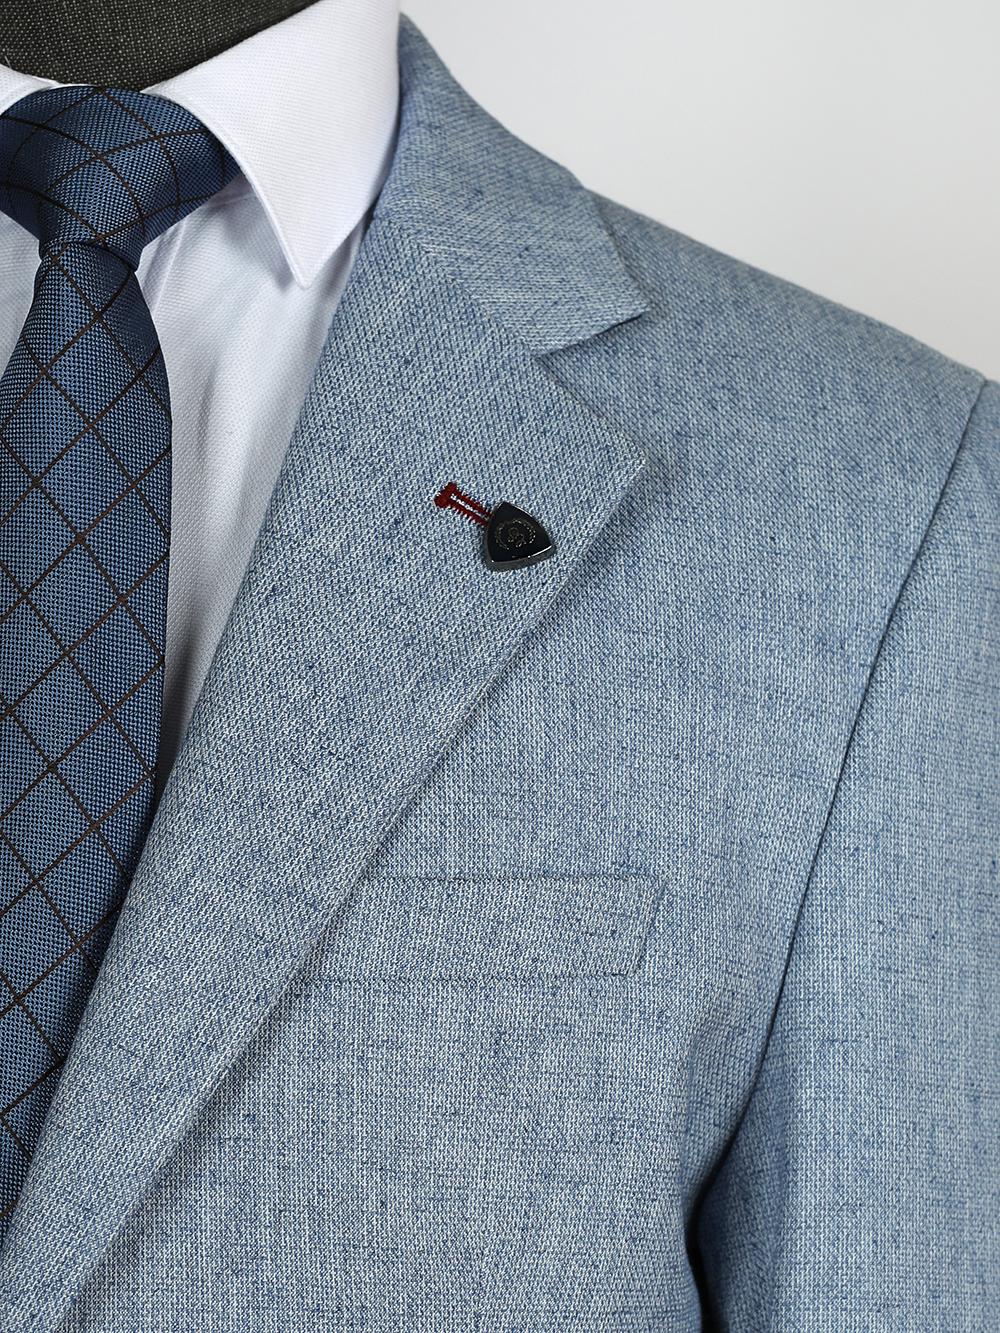 Kohen Blue Set Blazer Linen Suit